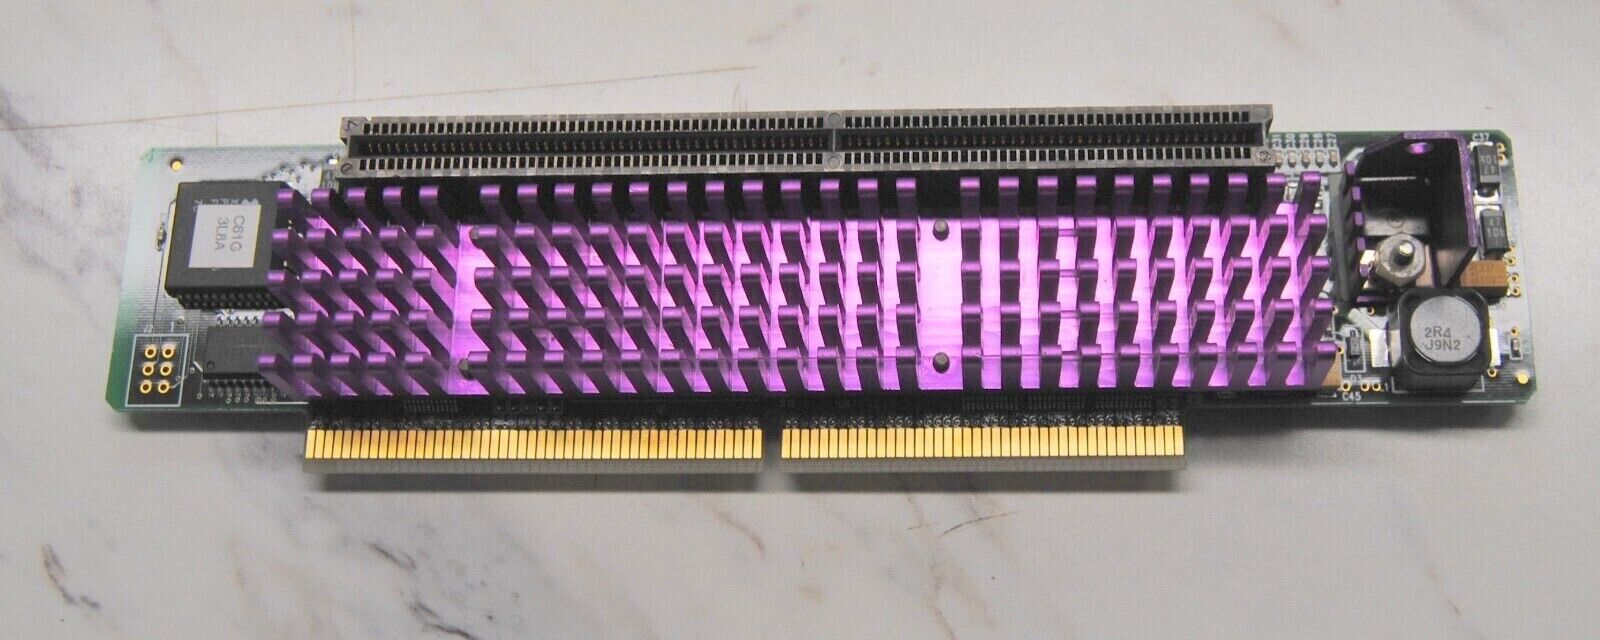 Macintosh Sonnet Crescendo NuBus G3 266/1M Processor Accelerator CPU Upgrade